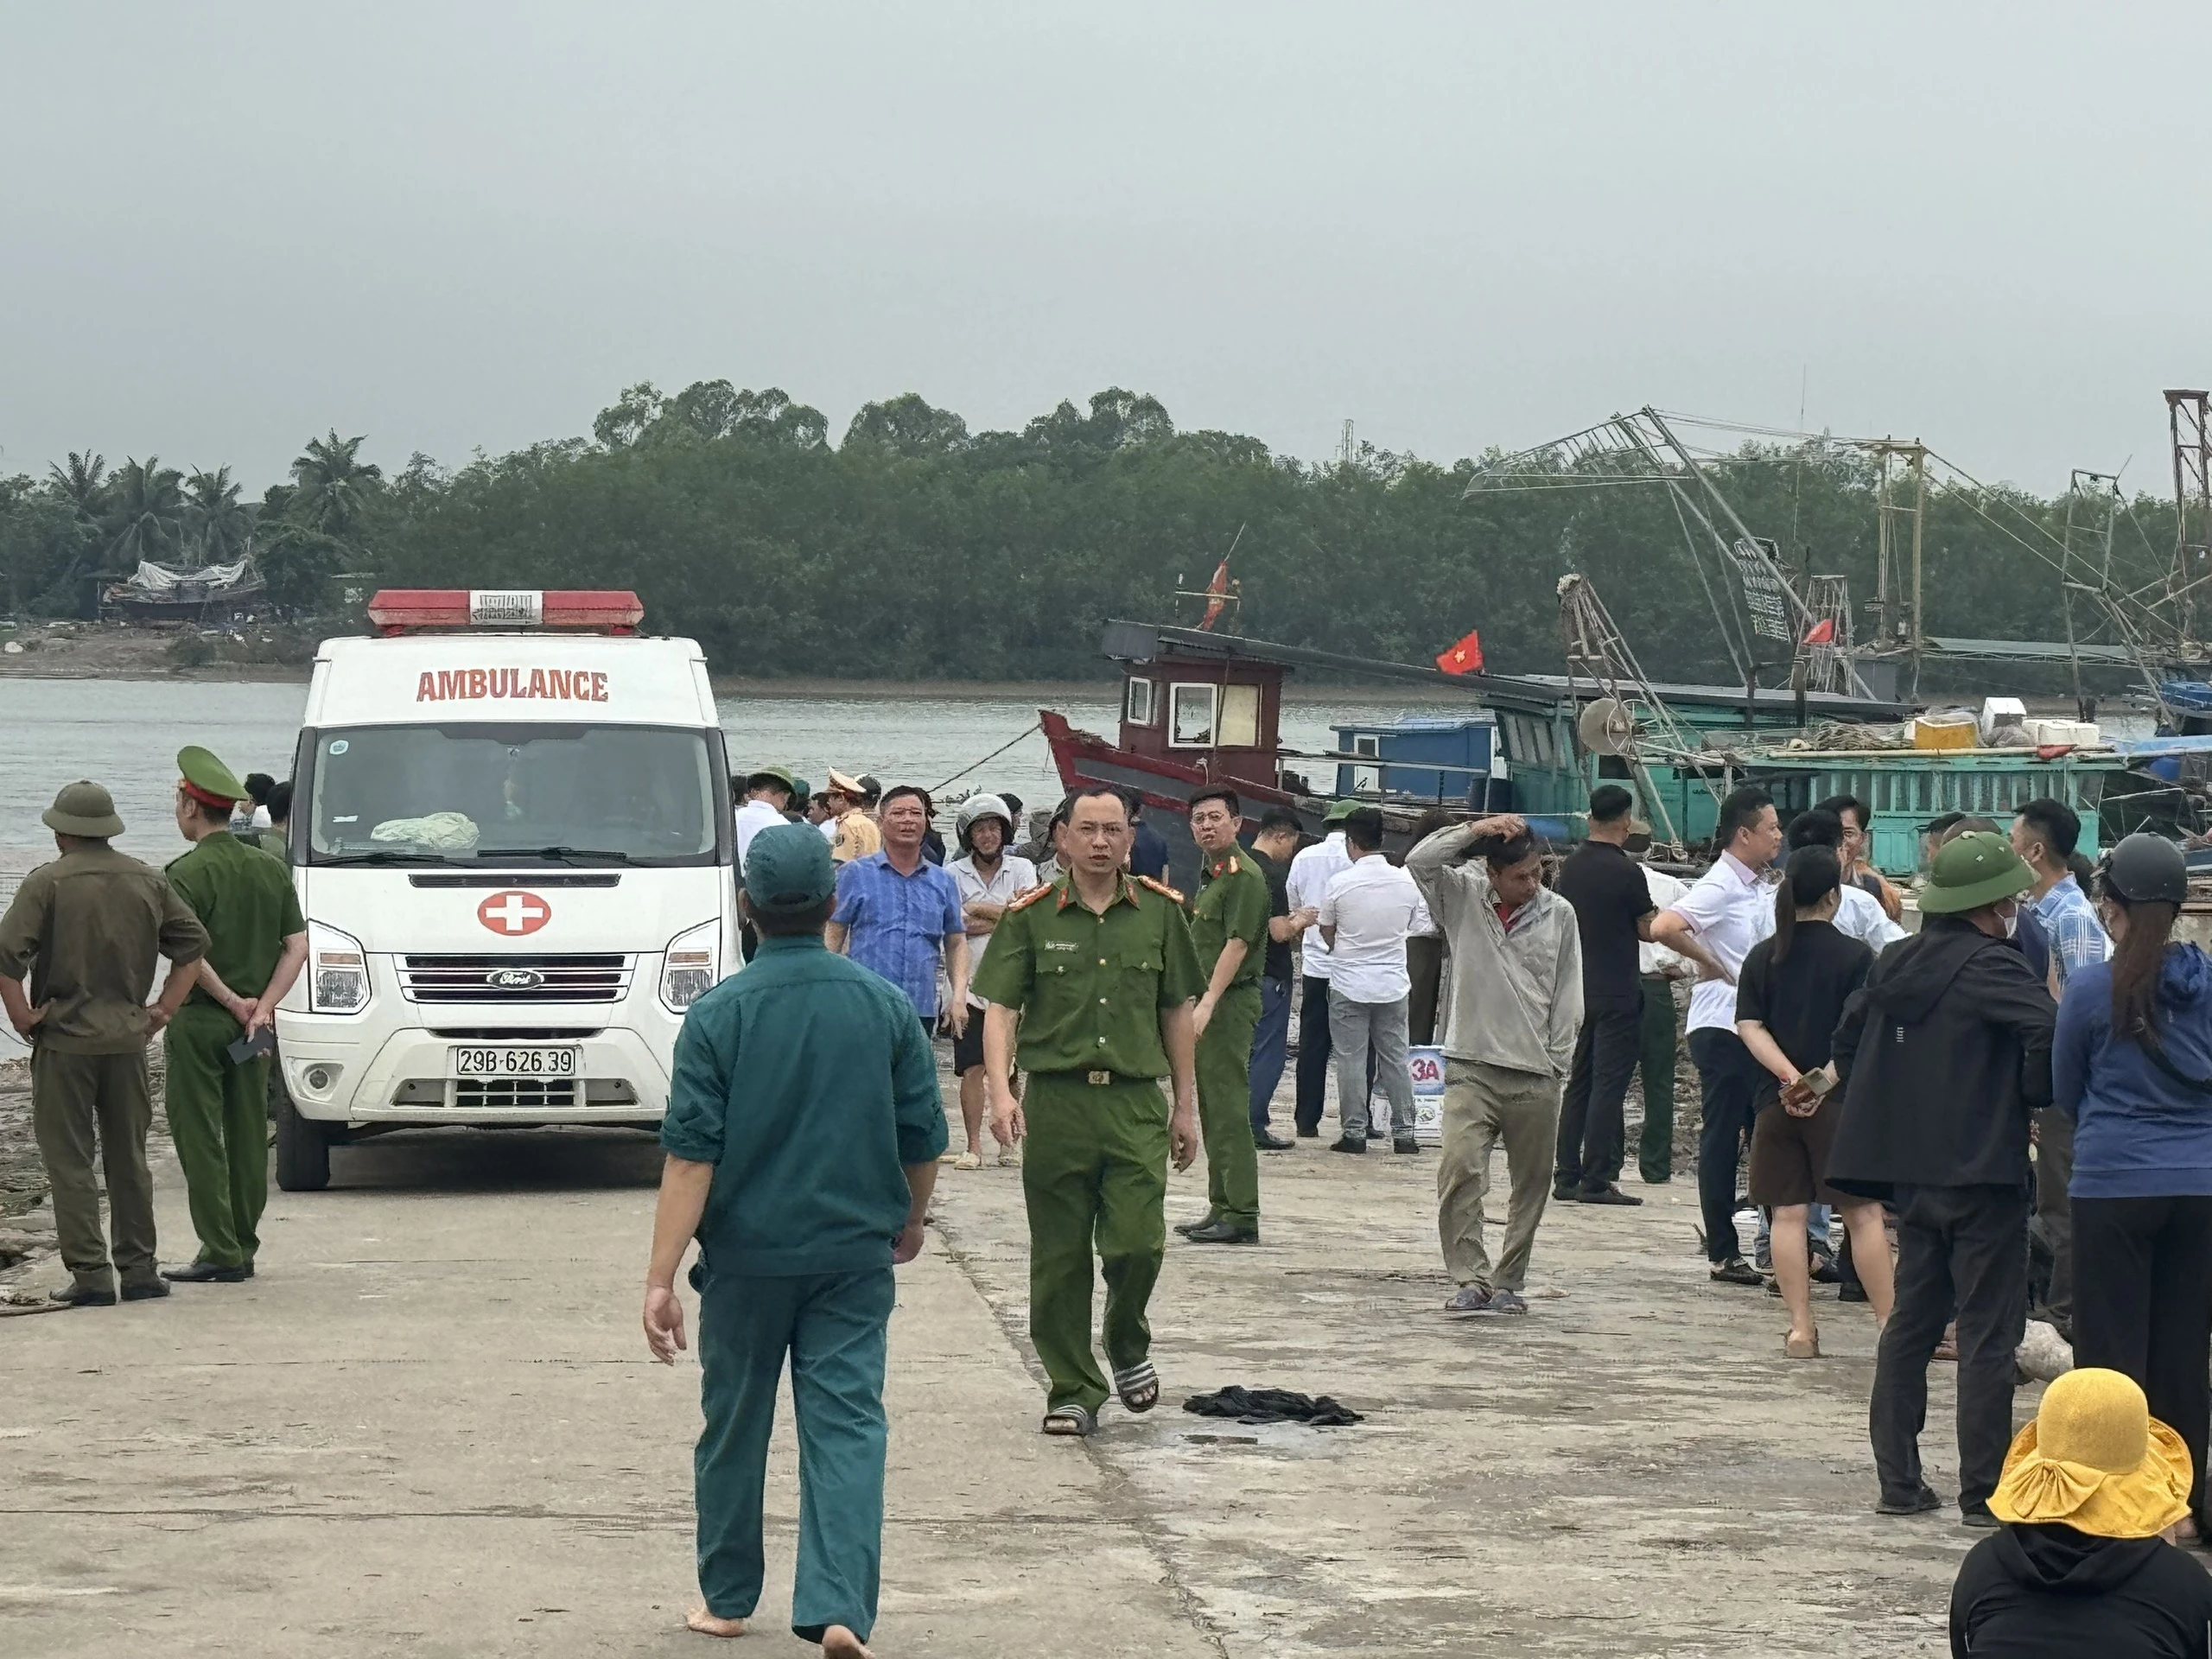 Vẫn chưa tìm thấy 2 chị em ruột trong vụ lật thuyền ở Quảng Ninh